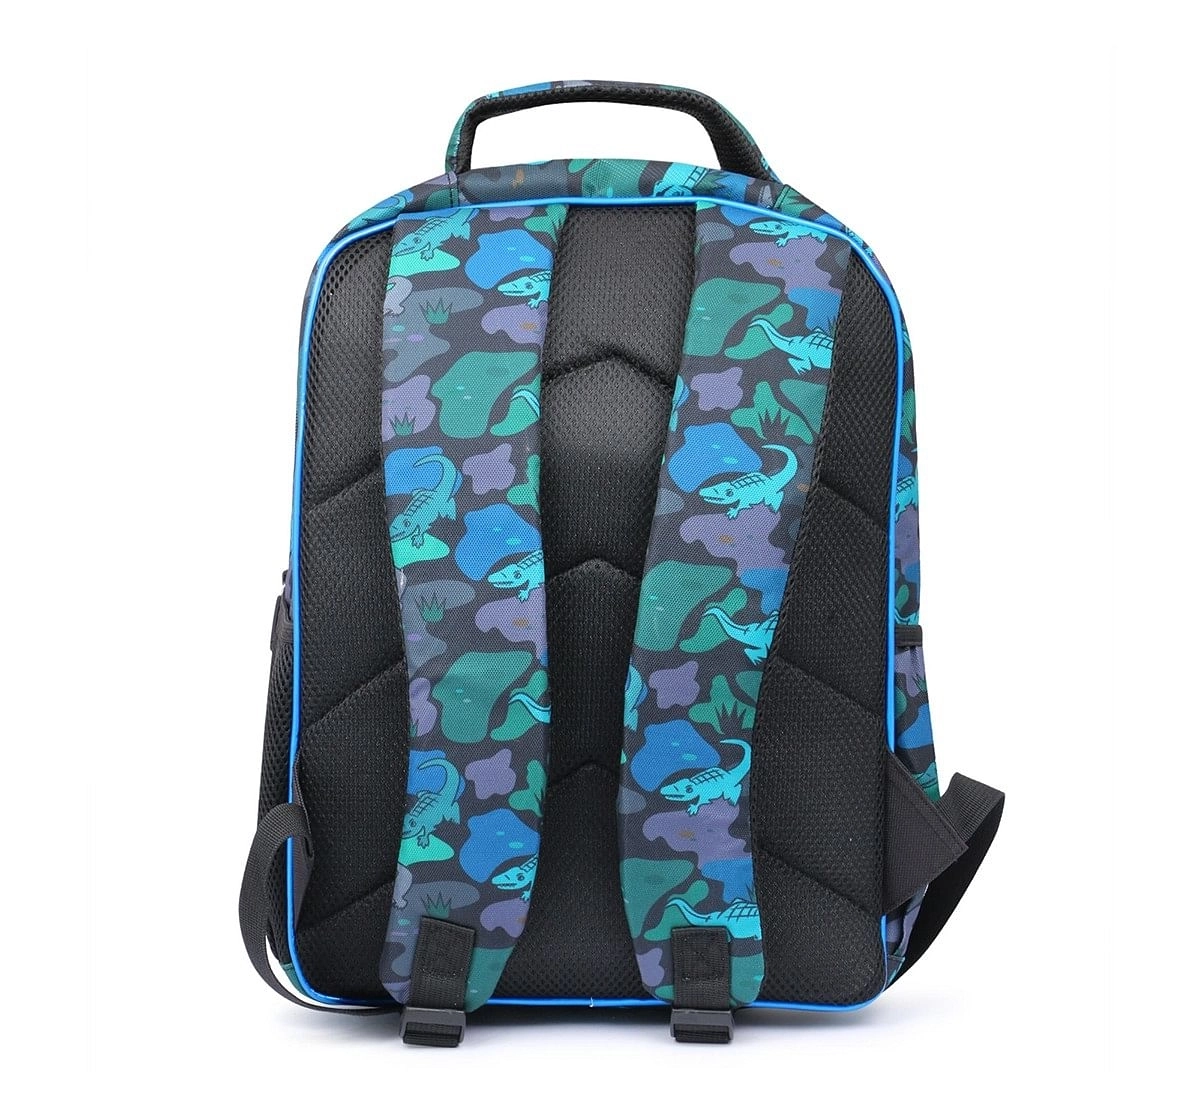 Hamster London Alligator Backpack for Kids age 3Y+ (Black)